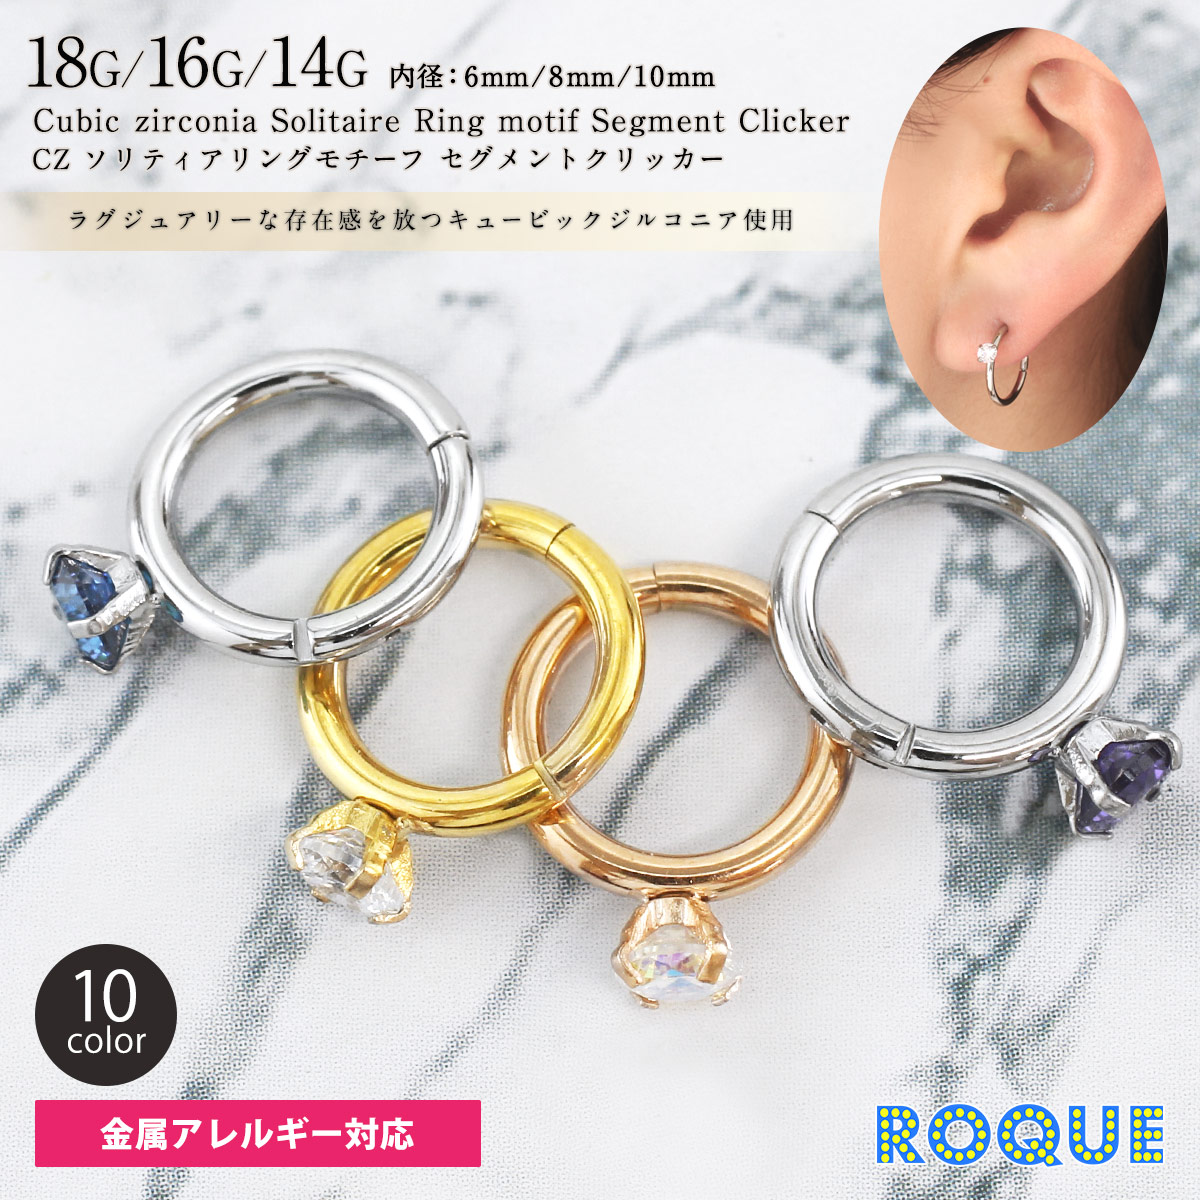 ボディピアス 18G 16G 14G キュービックジルコニア ソリティアリング 指輪モチーフ セグメントクリッカー(1個売り)(オマケ革命)  :rqa-bcr001-b8:ボディピアス軟骨ピアス ROQUE 通販 